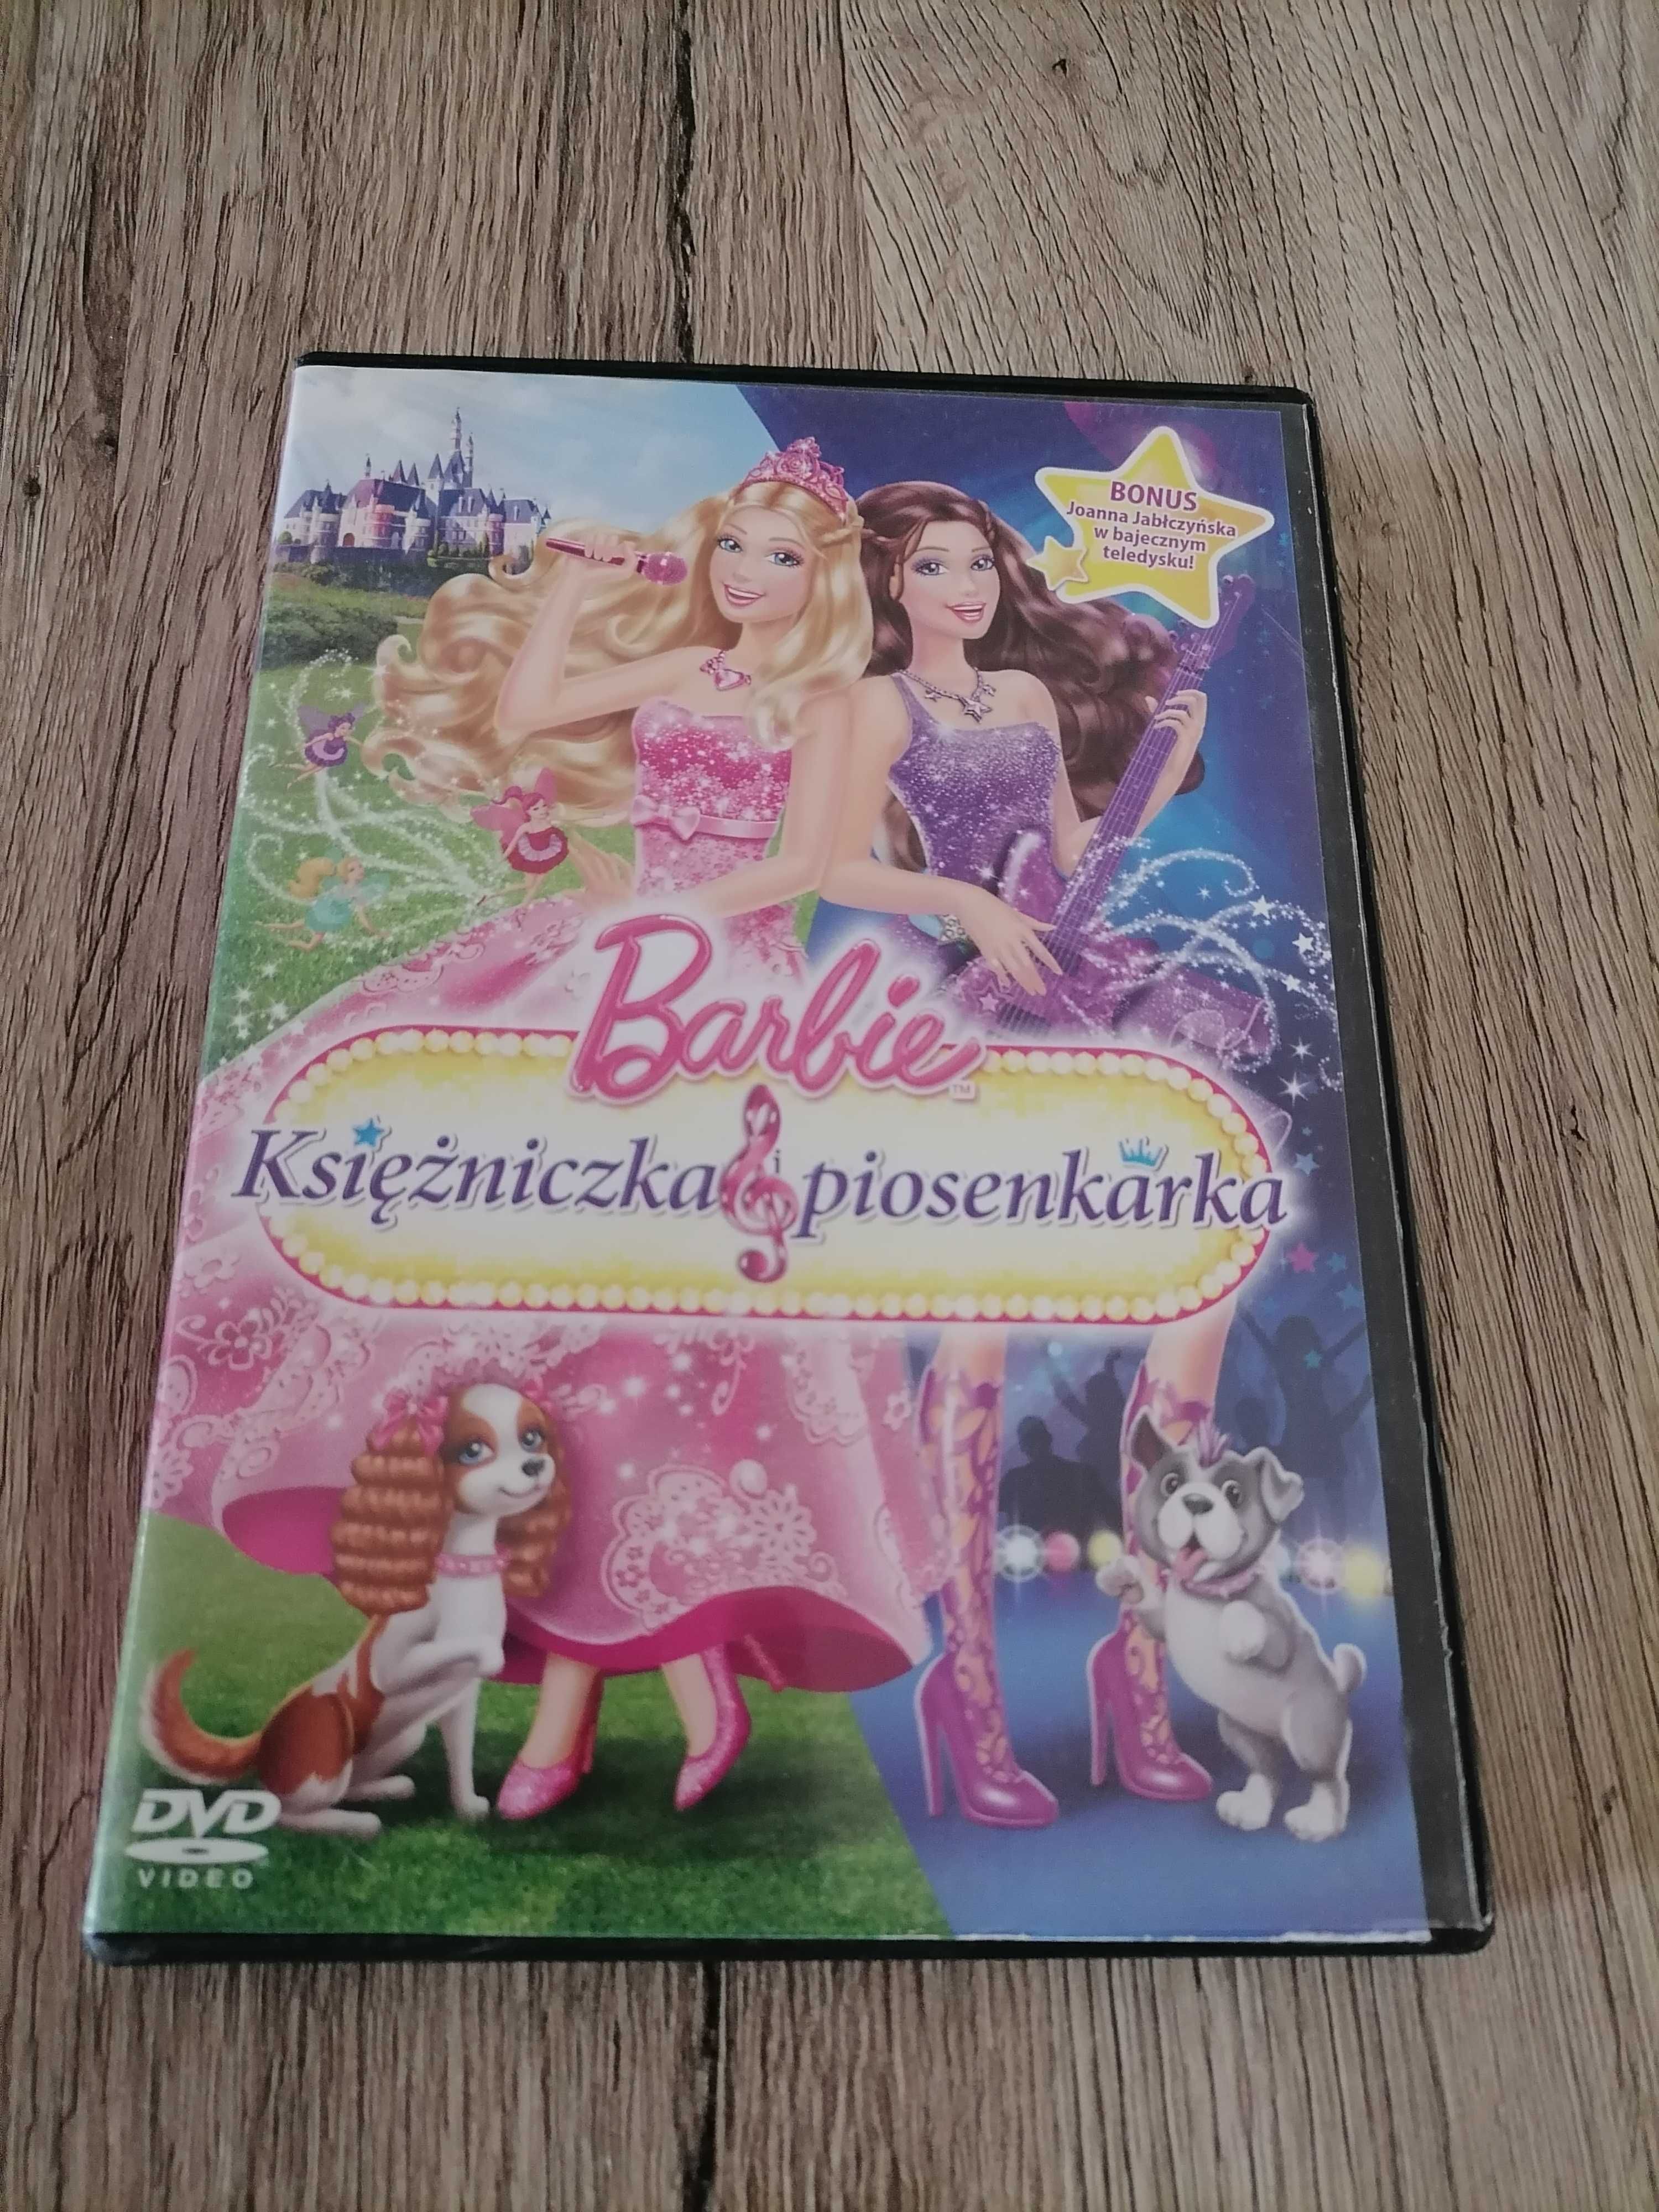 Barbie Księżniczka i piosenkarka. DVD